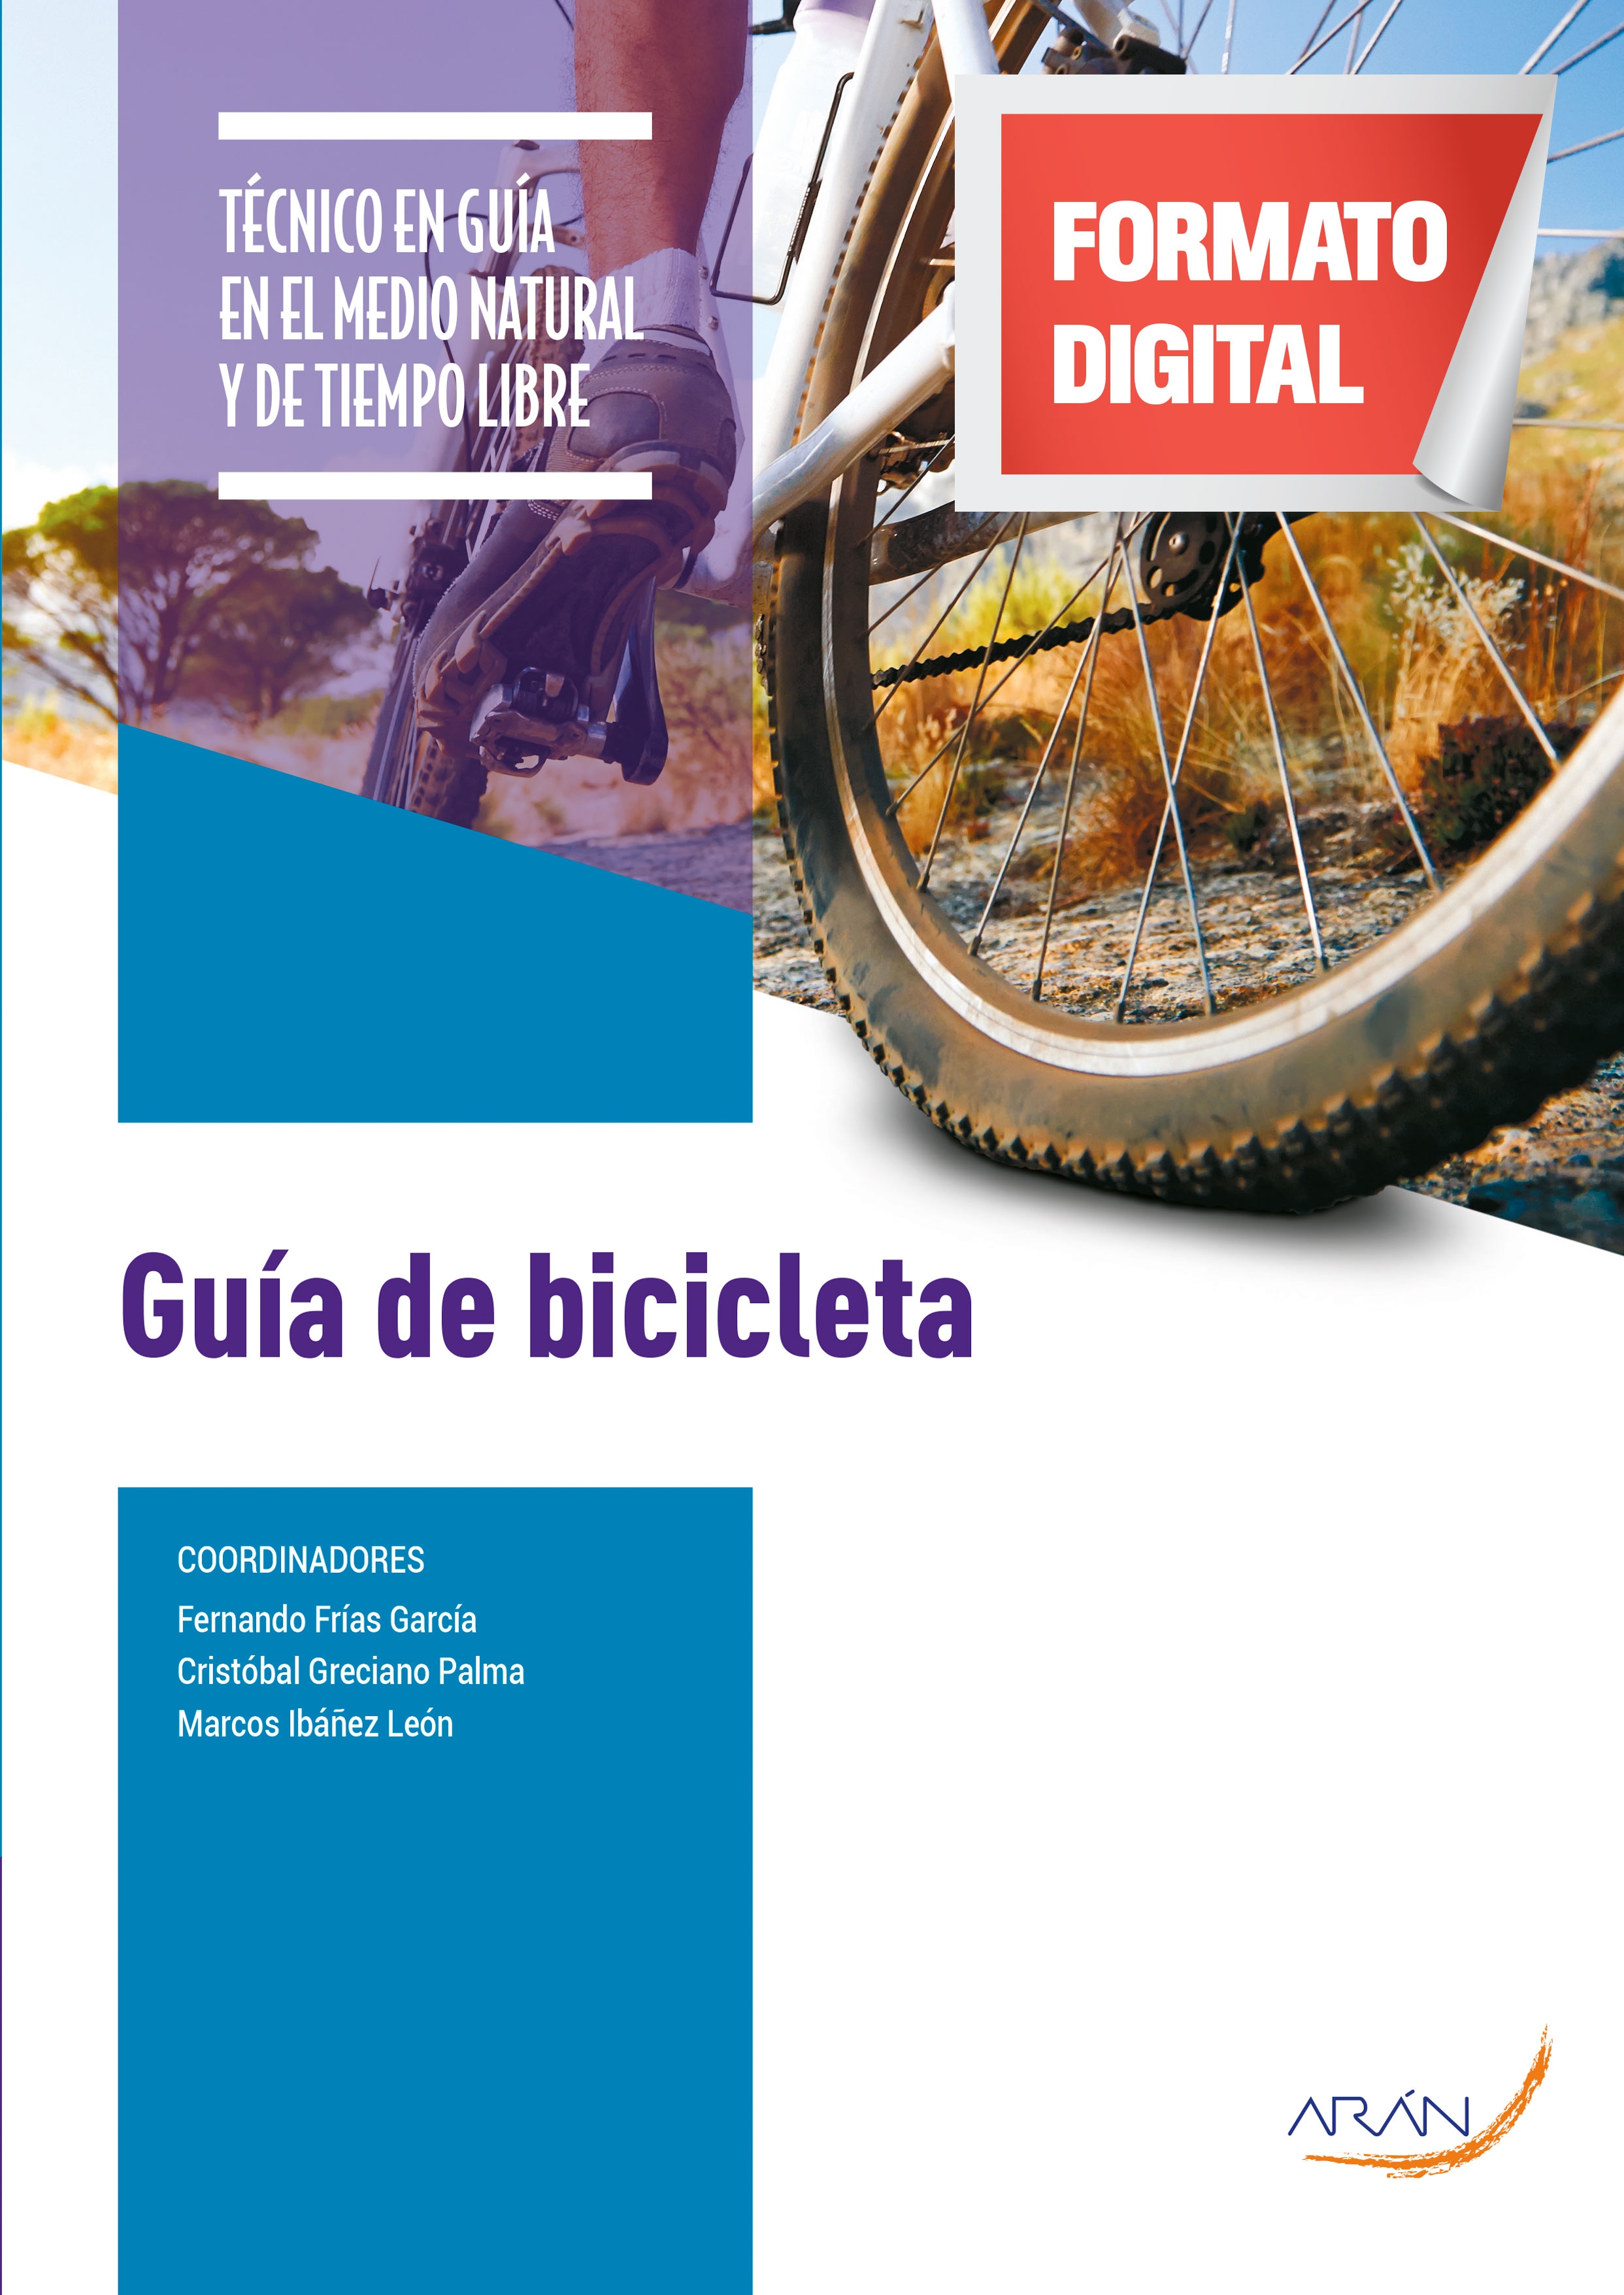 Gángster oleada sobre Guía de bicicleta - Arán Ediciones